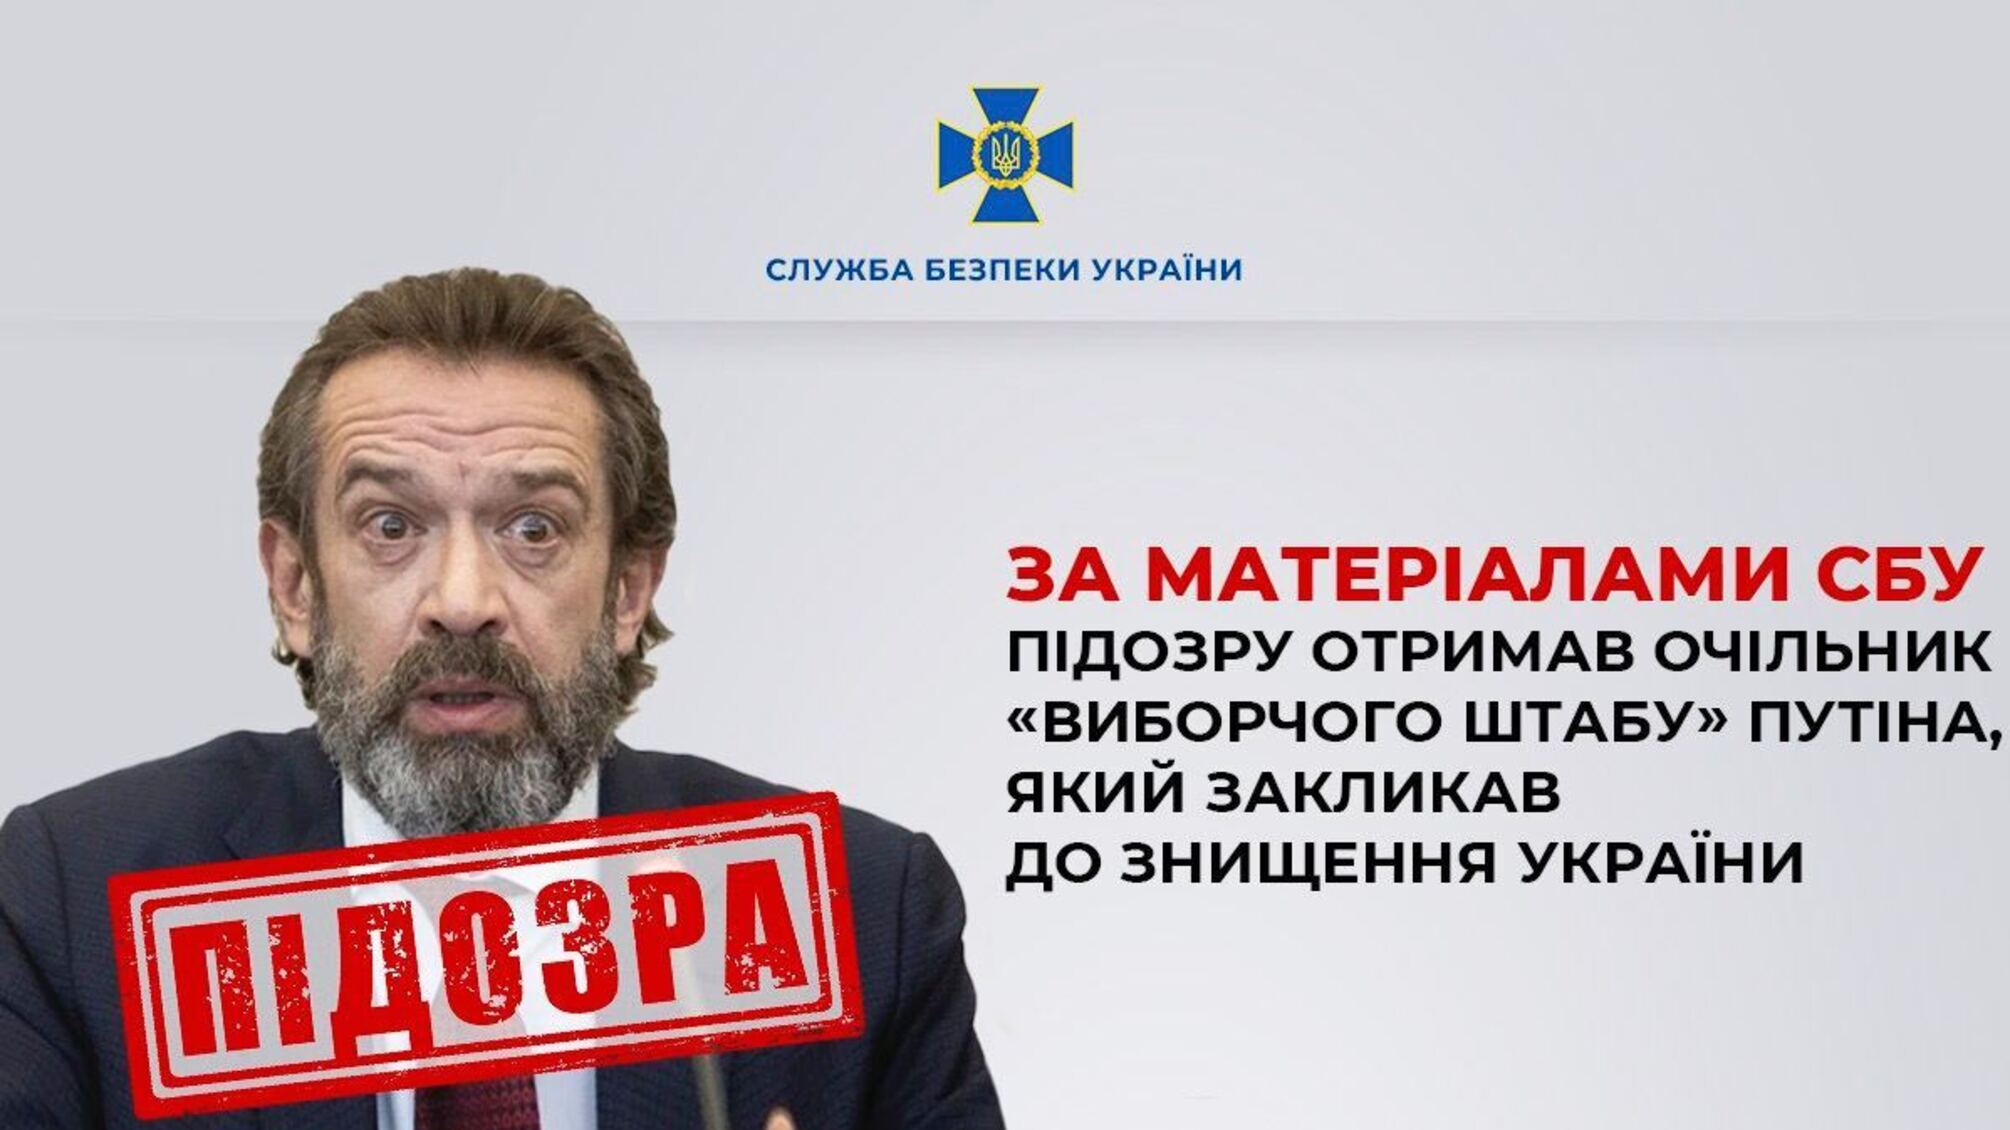 По материалам СБУ подозрение получил глава 'избирательного штаба' путина, призывавший к уничтожению Украины